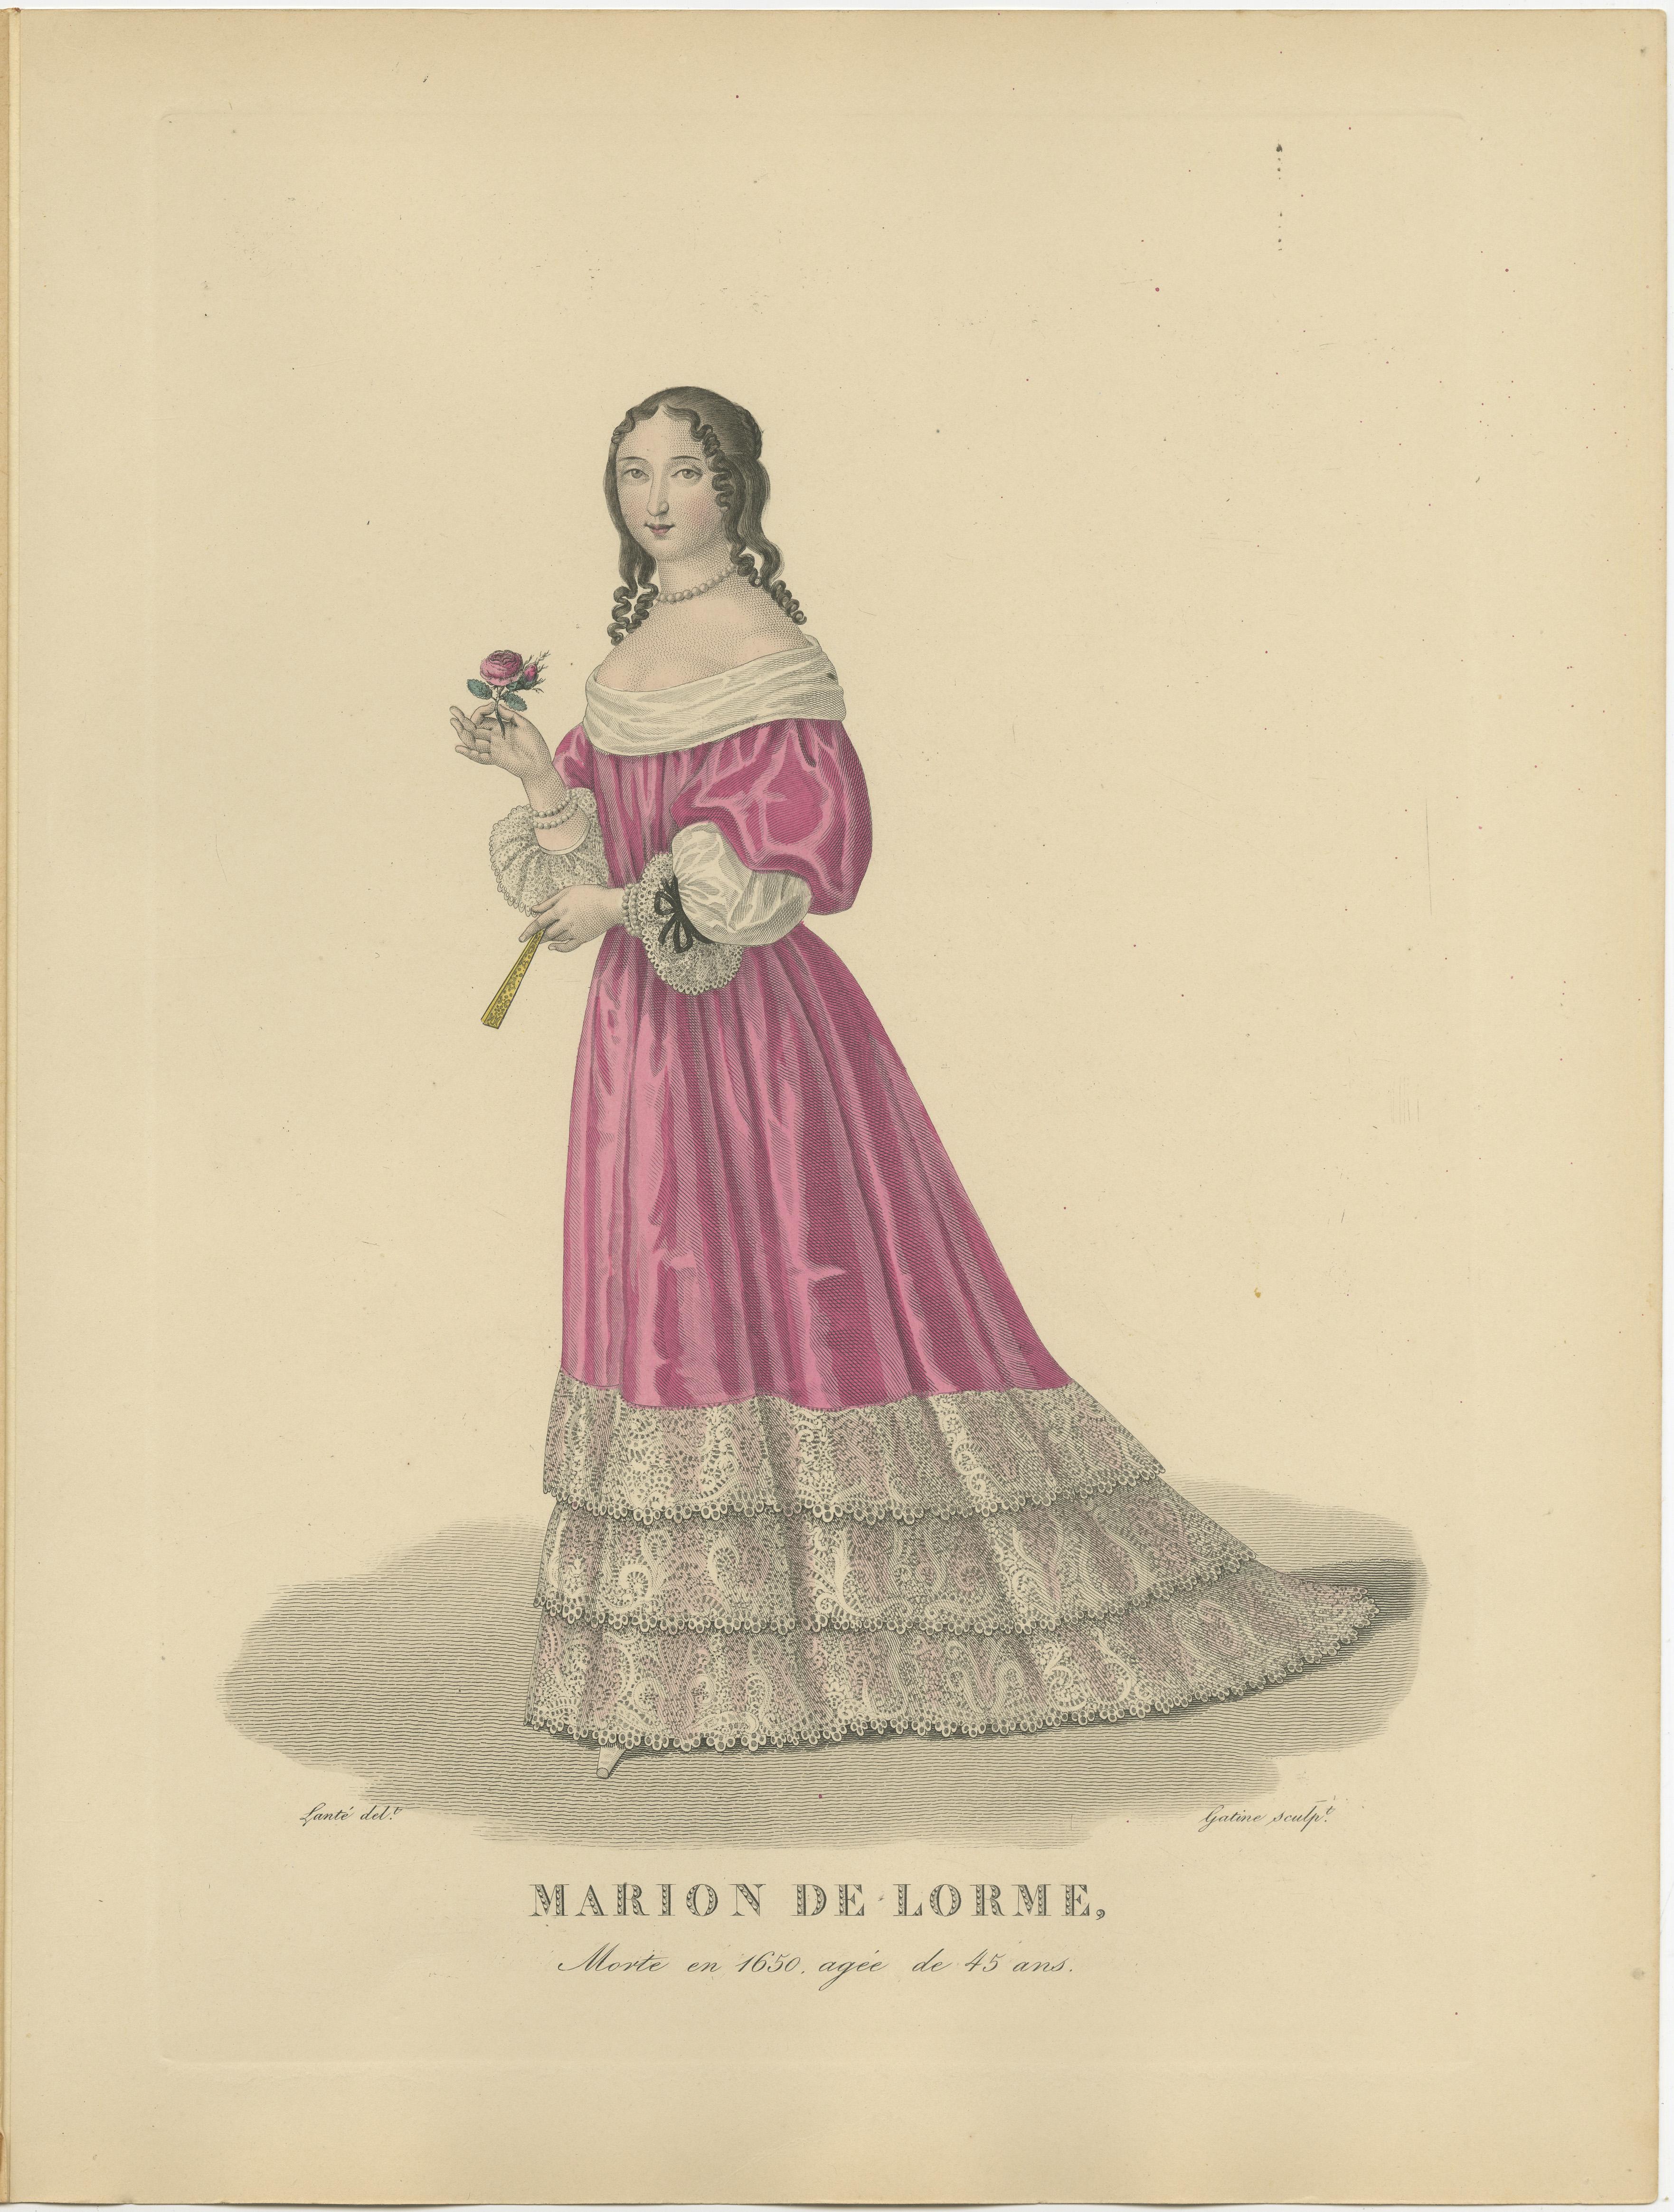 Impression ancienne intitulée 'MARION DE LORME' Impression ancienne originale de Marion Delorme.

Marion Delorme (3 octobre 1613 - 2 juillet 1650) était une courtisane française connue pour ses relations avec les hommes importants de son